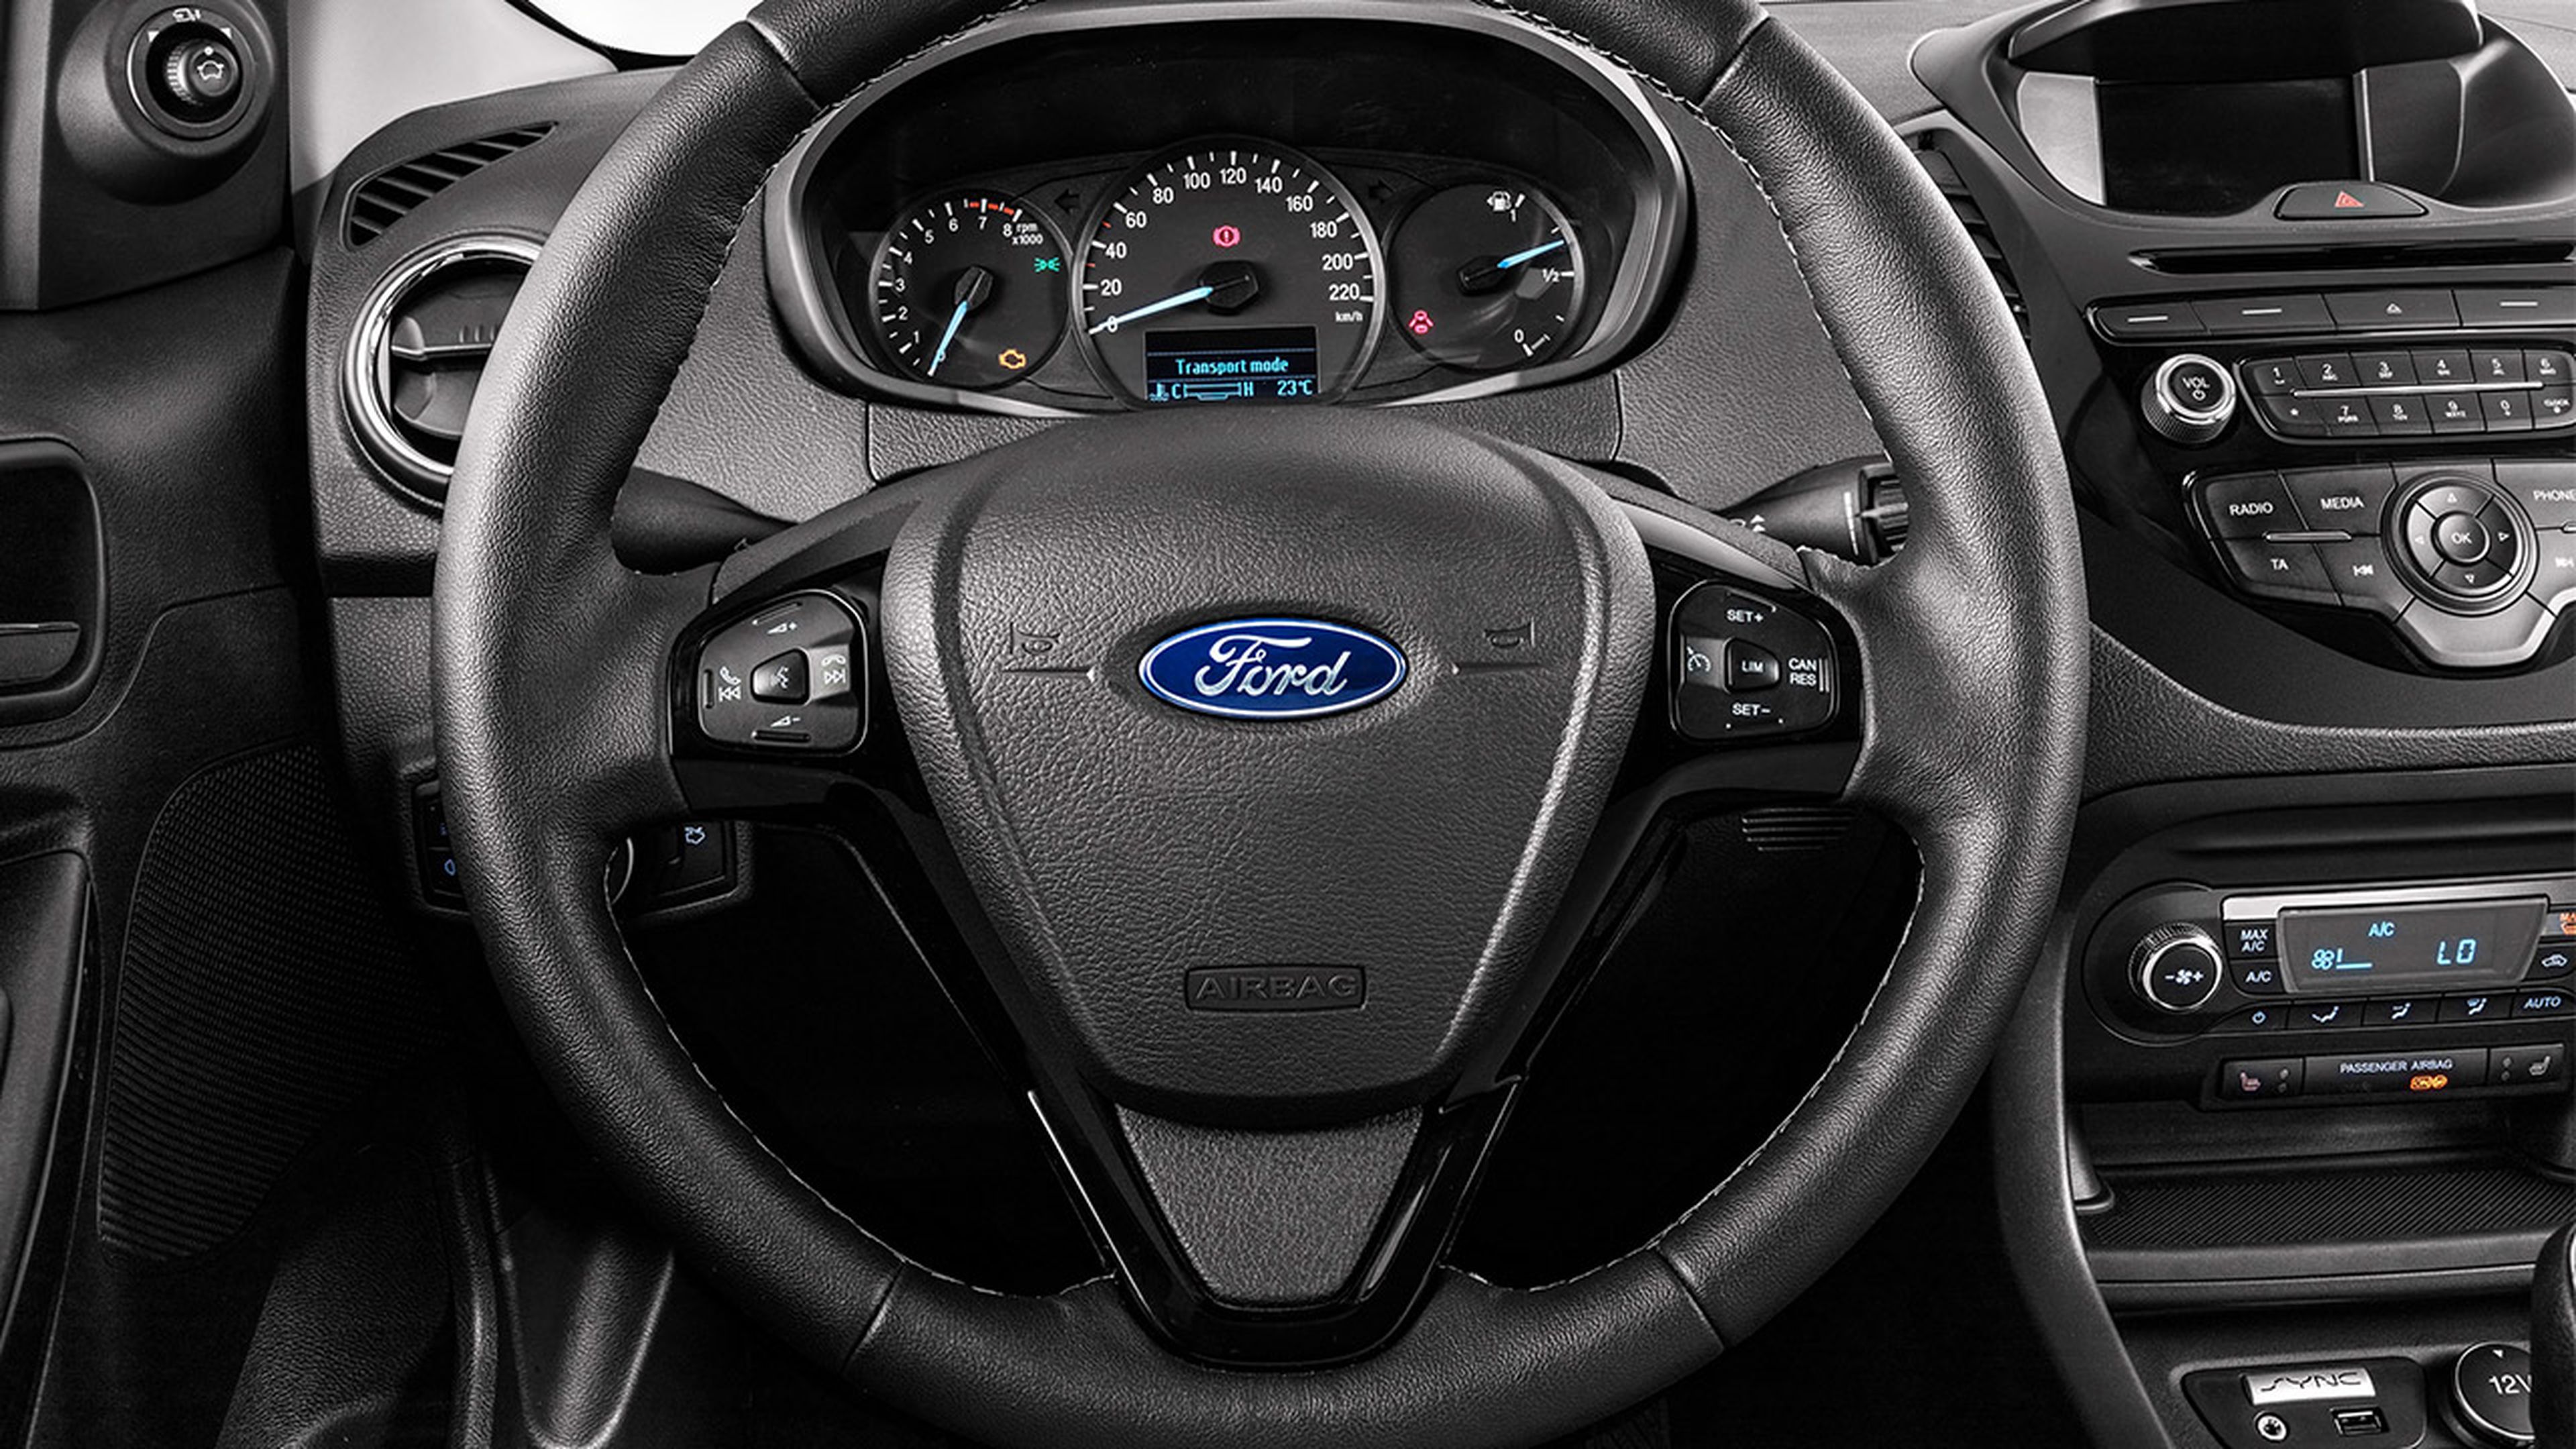 Ford KA+ interior